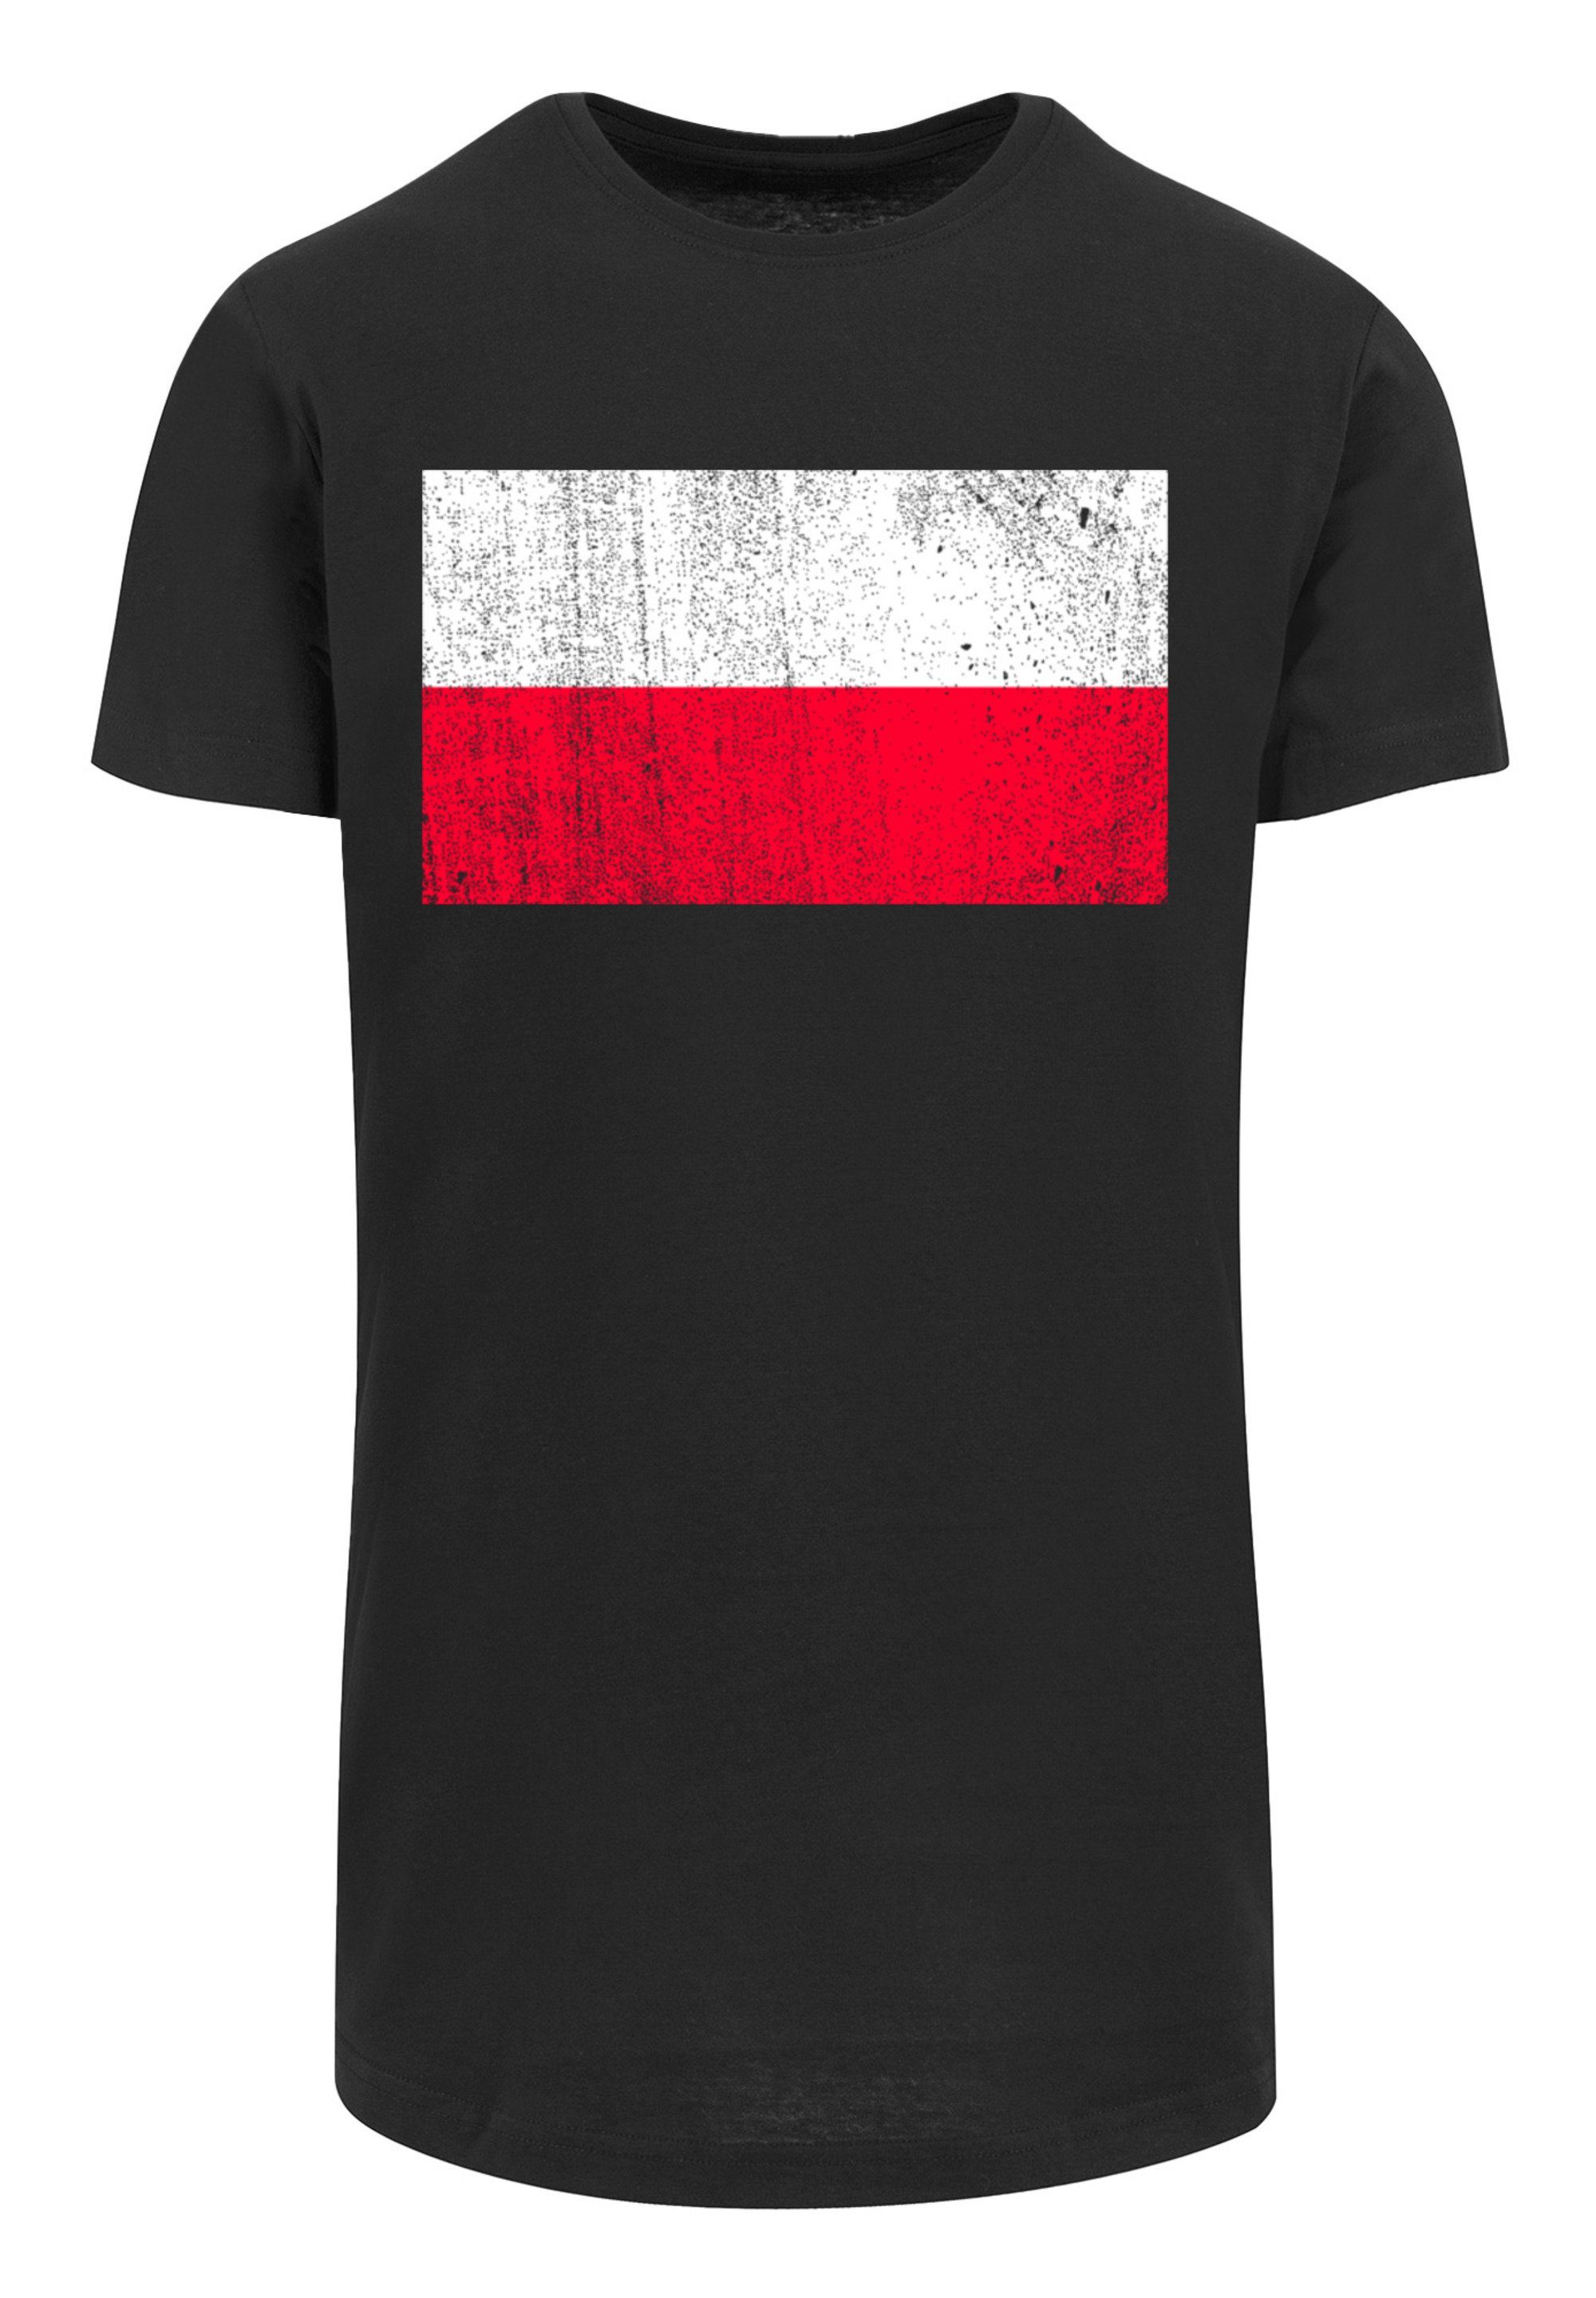 Größe Print, ist Model M T-Shirt trägt F4NT4STIC und Das Poland Polen distressed Flagge cm 180 groß